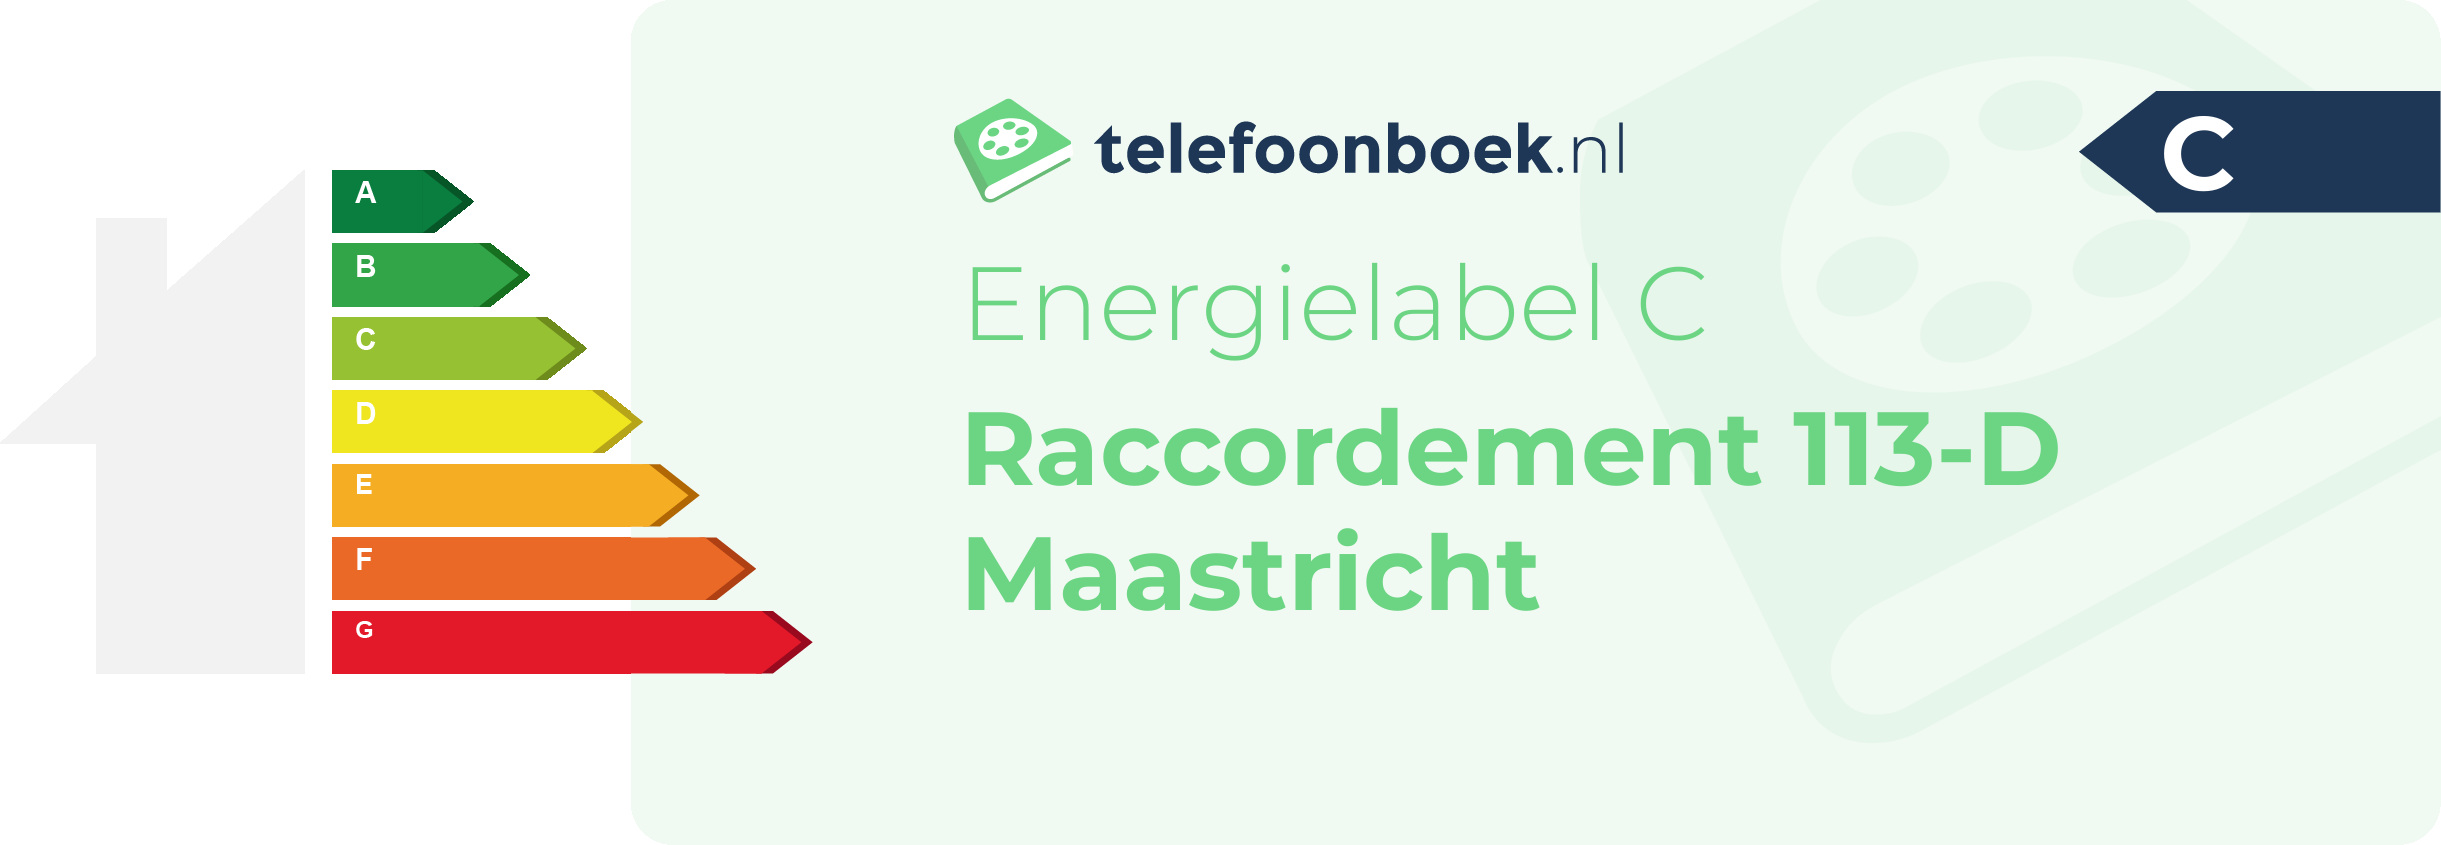 Energielabel Raccordement 113-D Maastricht